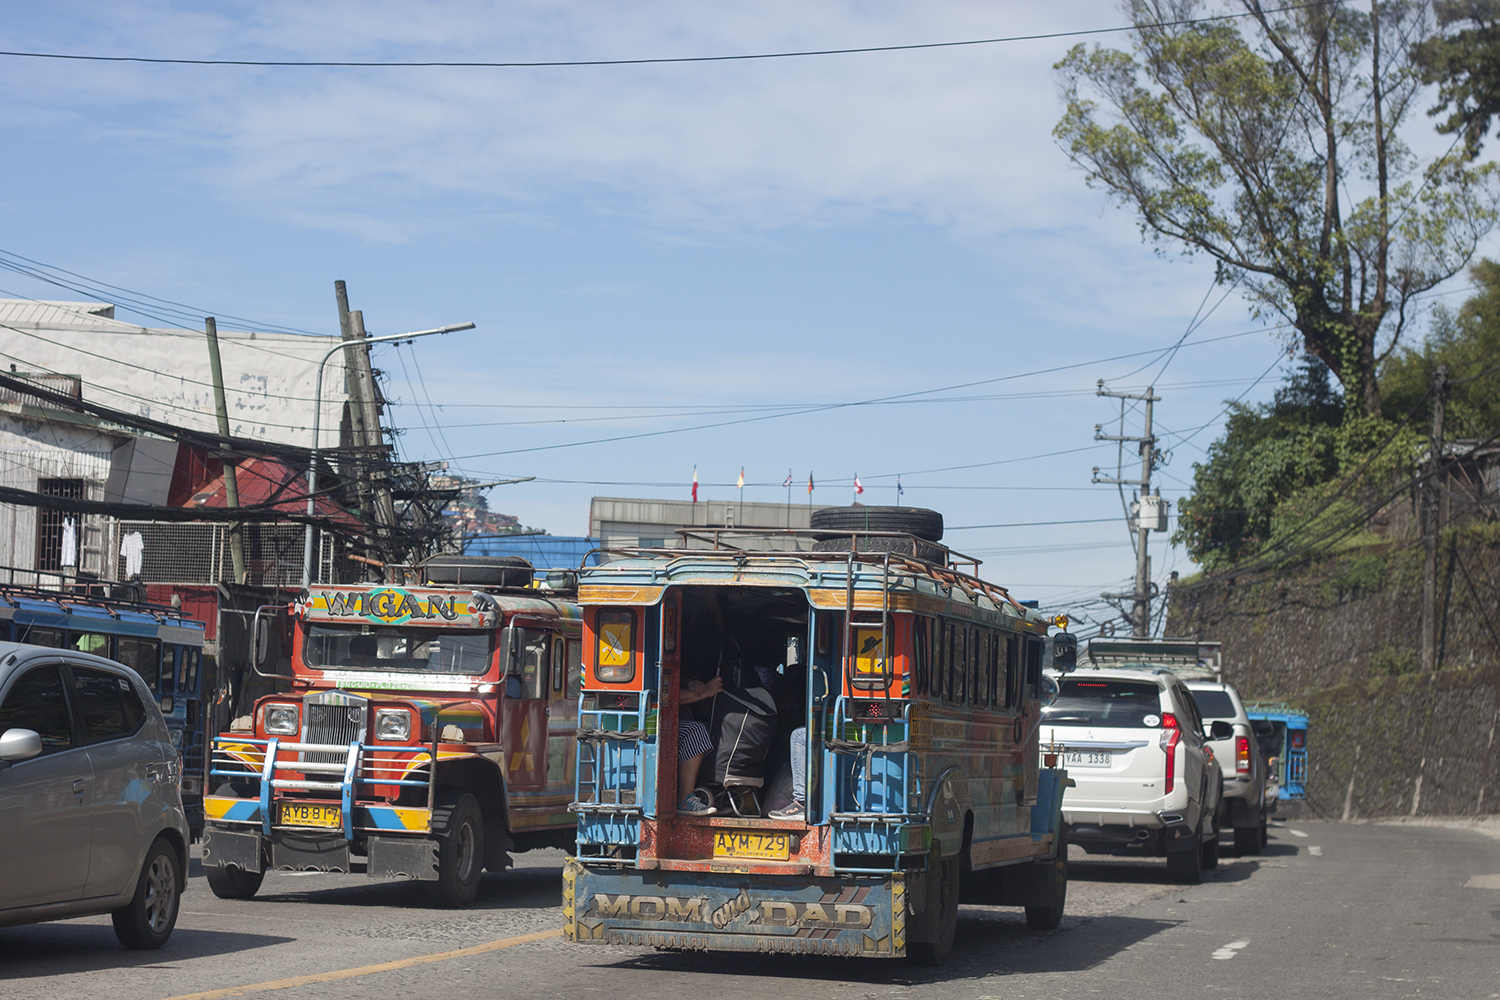 Thú vị những chiếc xe Jeepney đầy sắc màu ở Philippines - 8